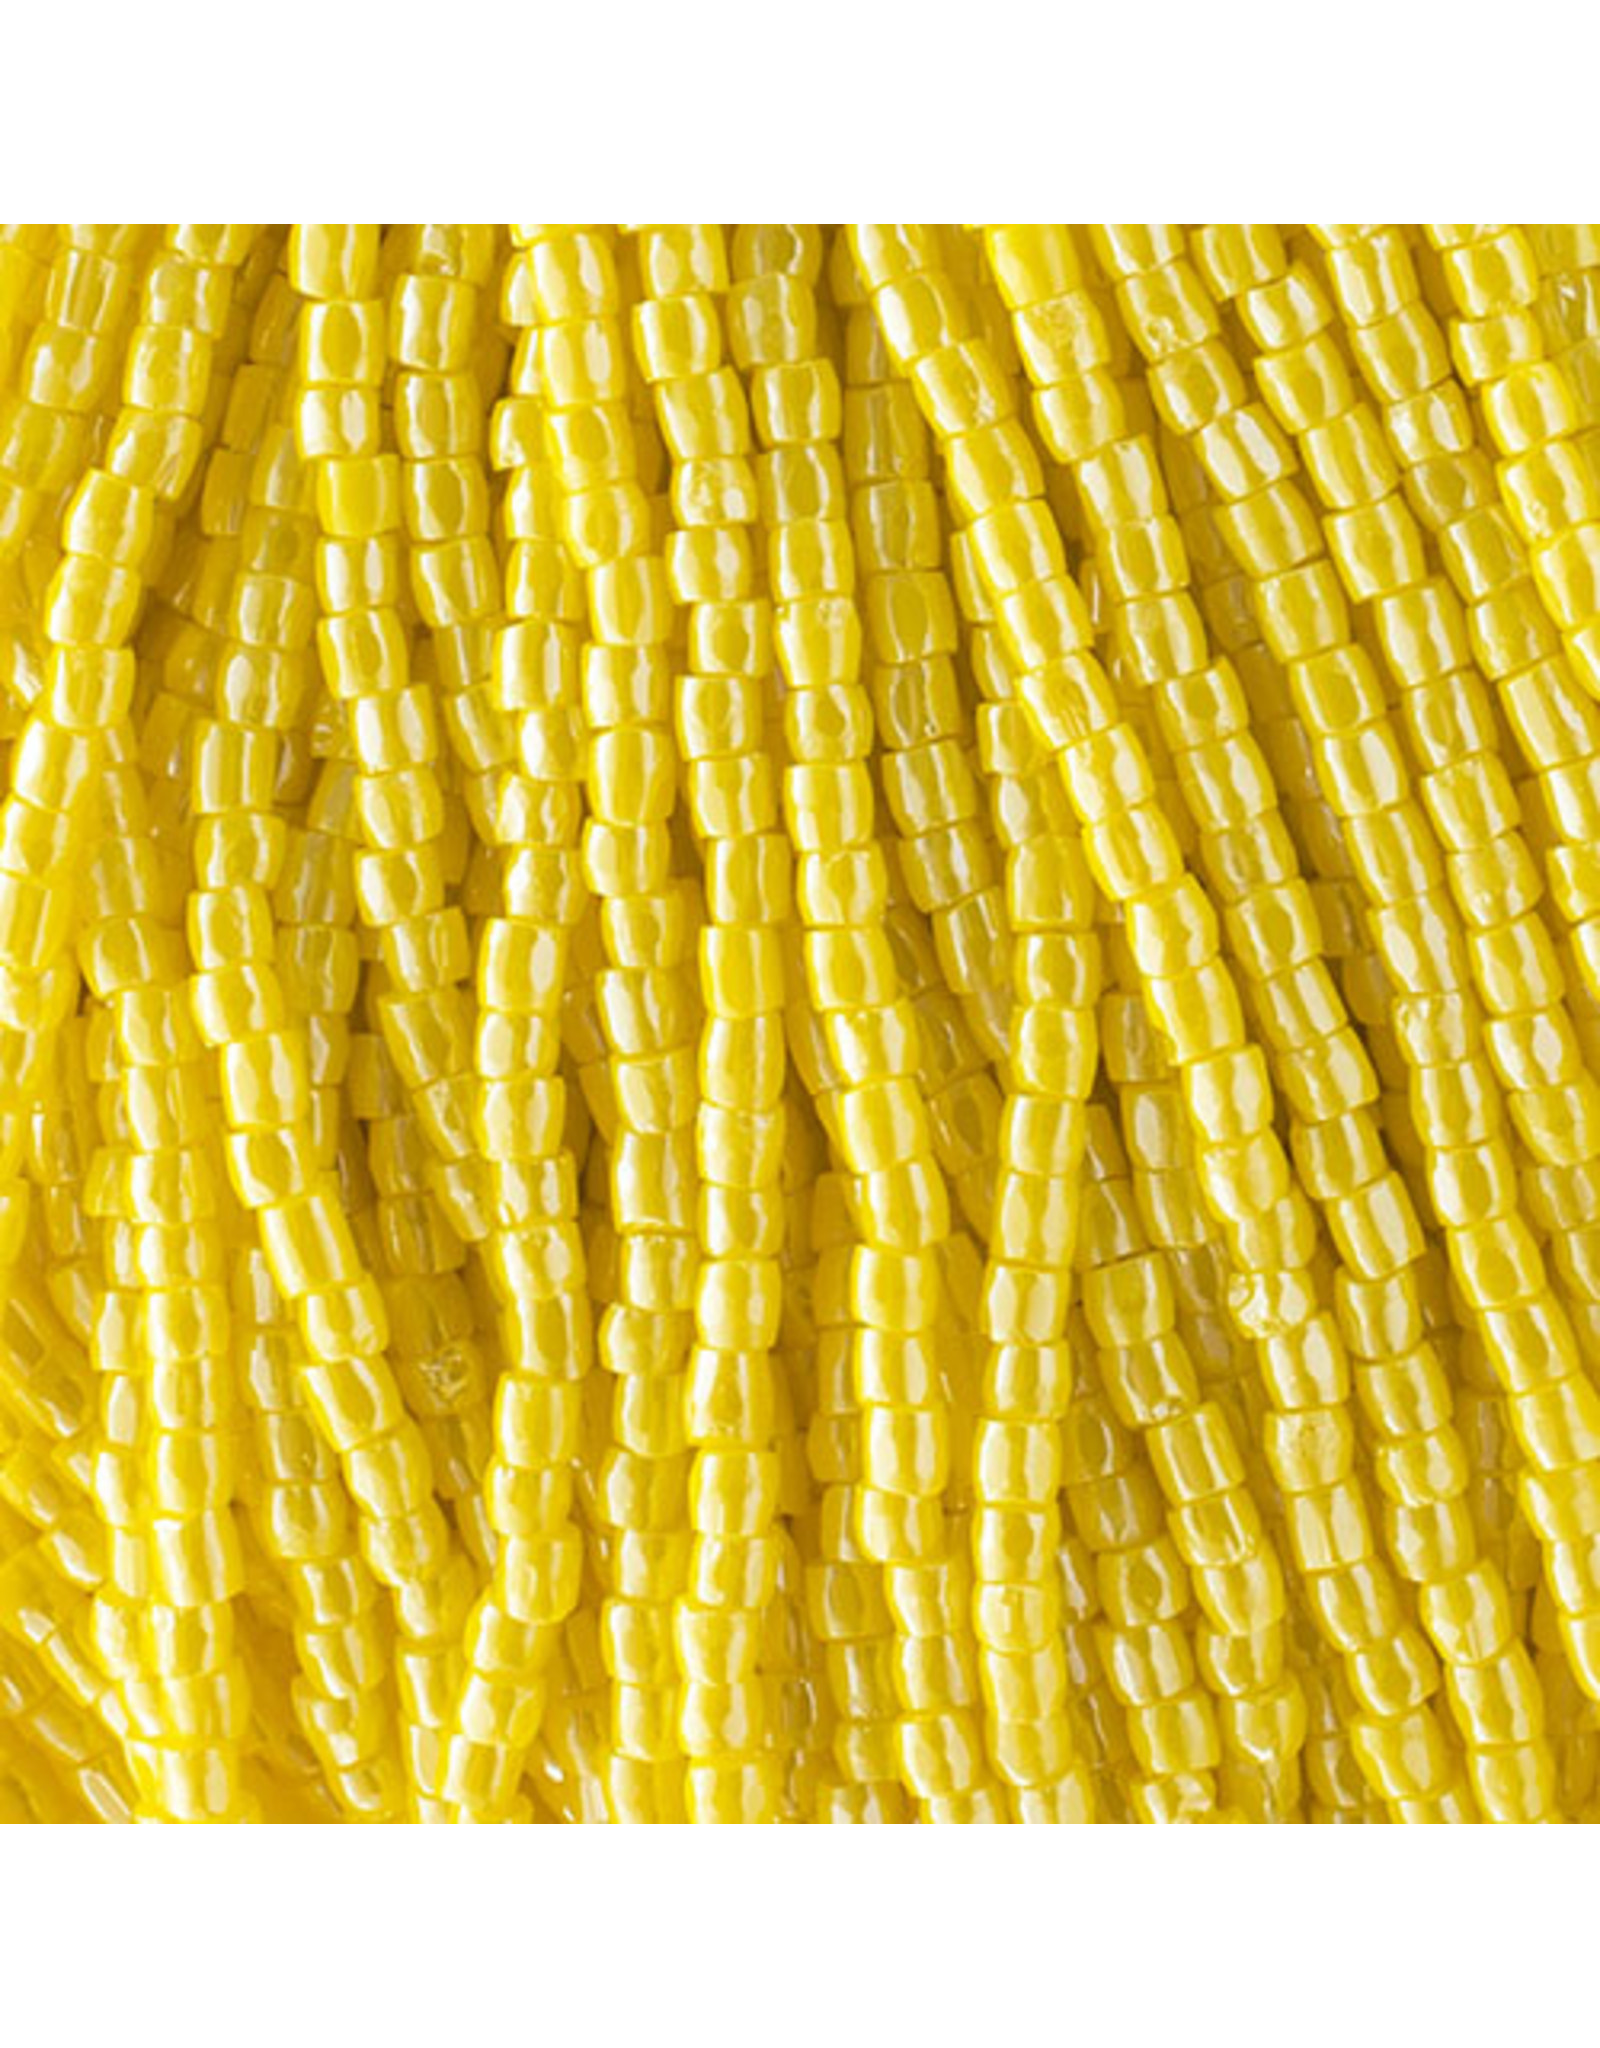 Czech 10036 9/0 3 Cut Seed Hank 30g Opaque Yellow Lustre